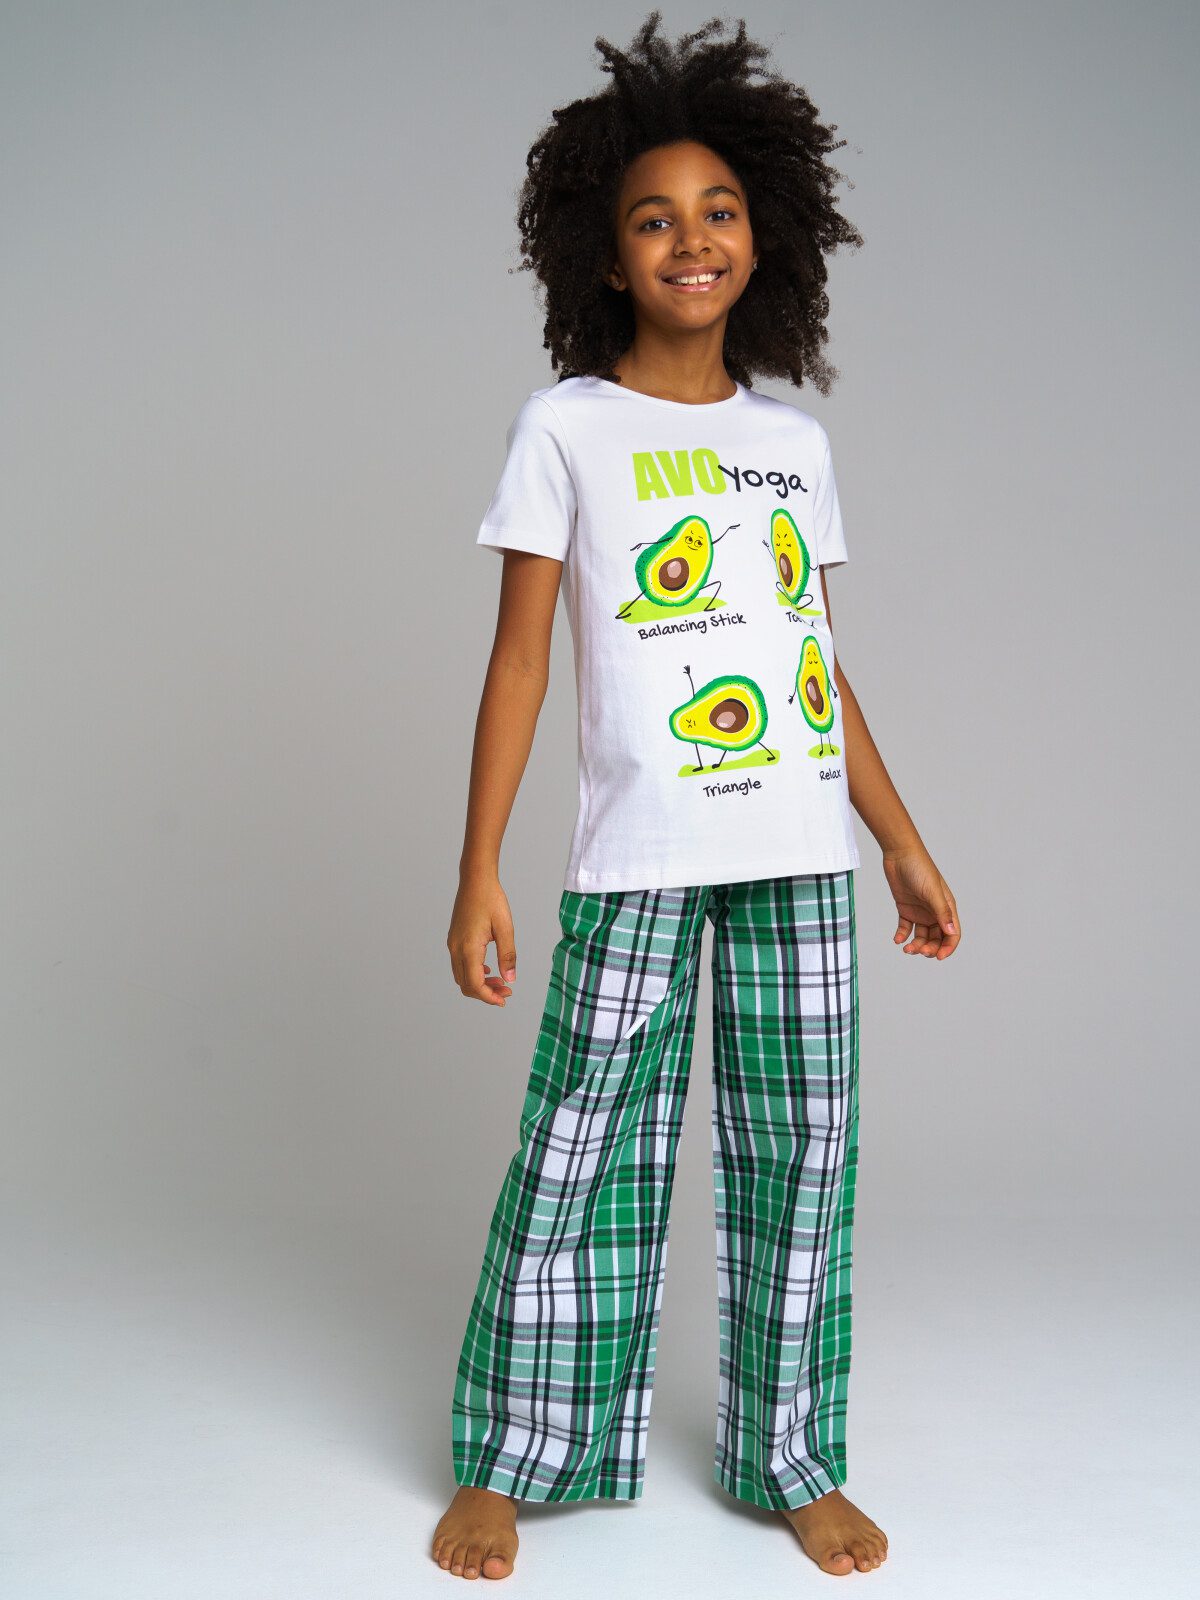 Комплект для девочек: фуфайка трикотажная (футболка), брюки текстильные